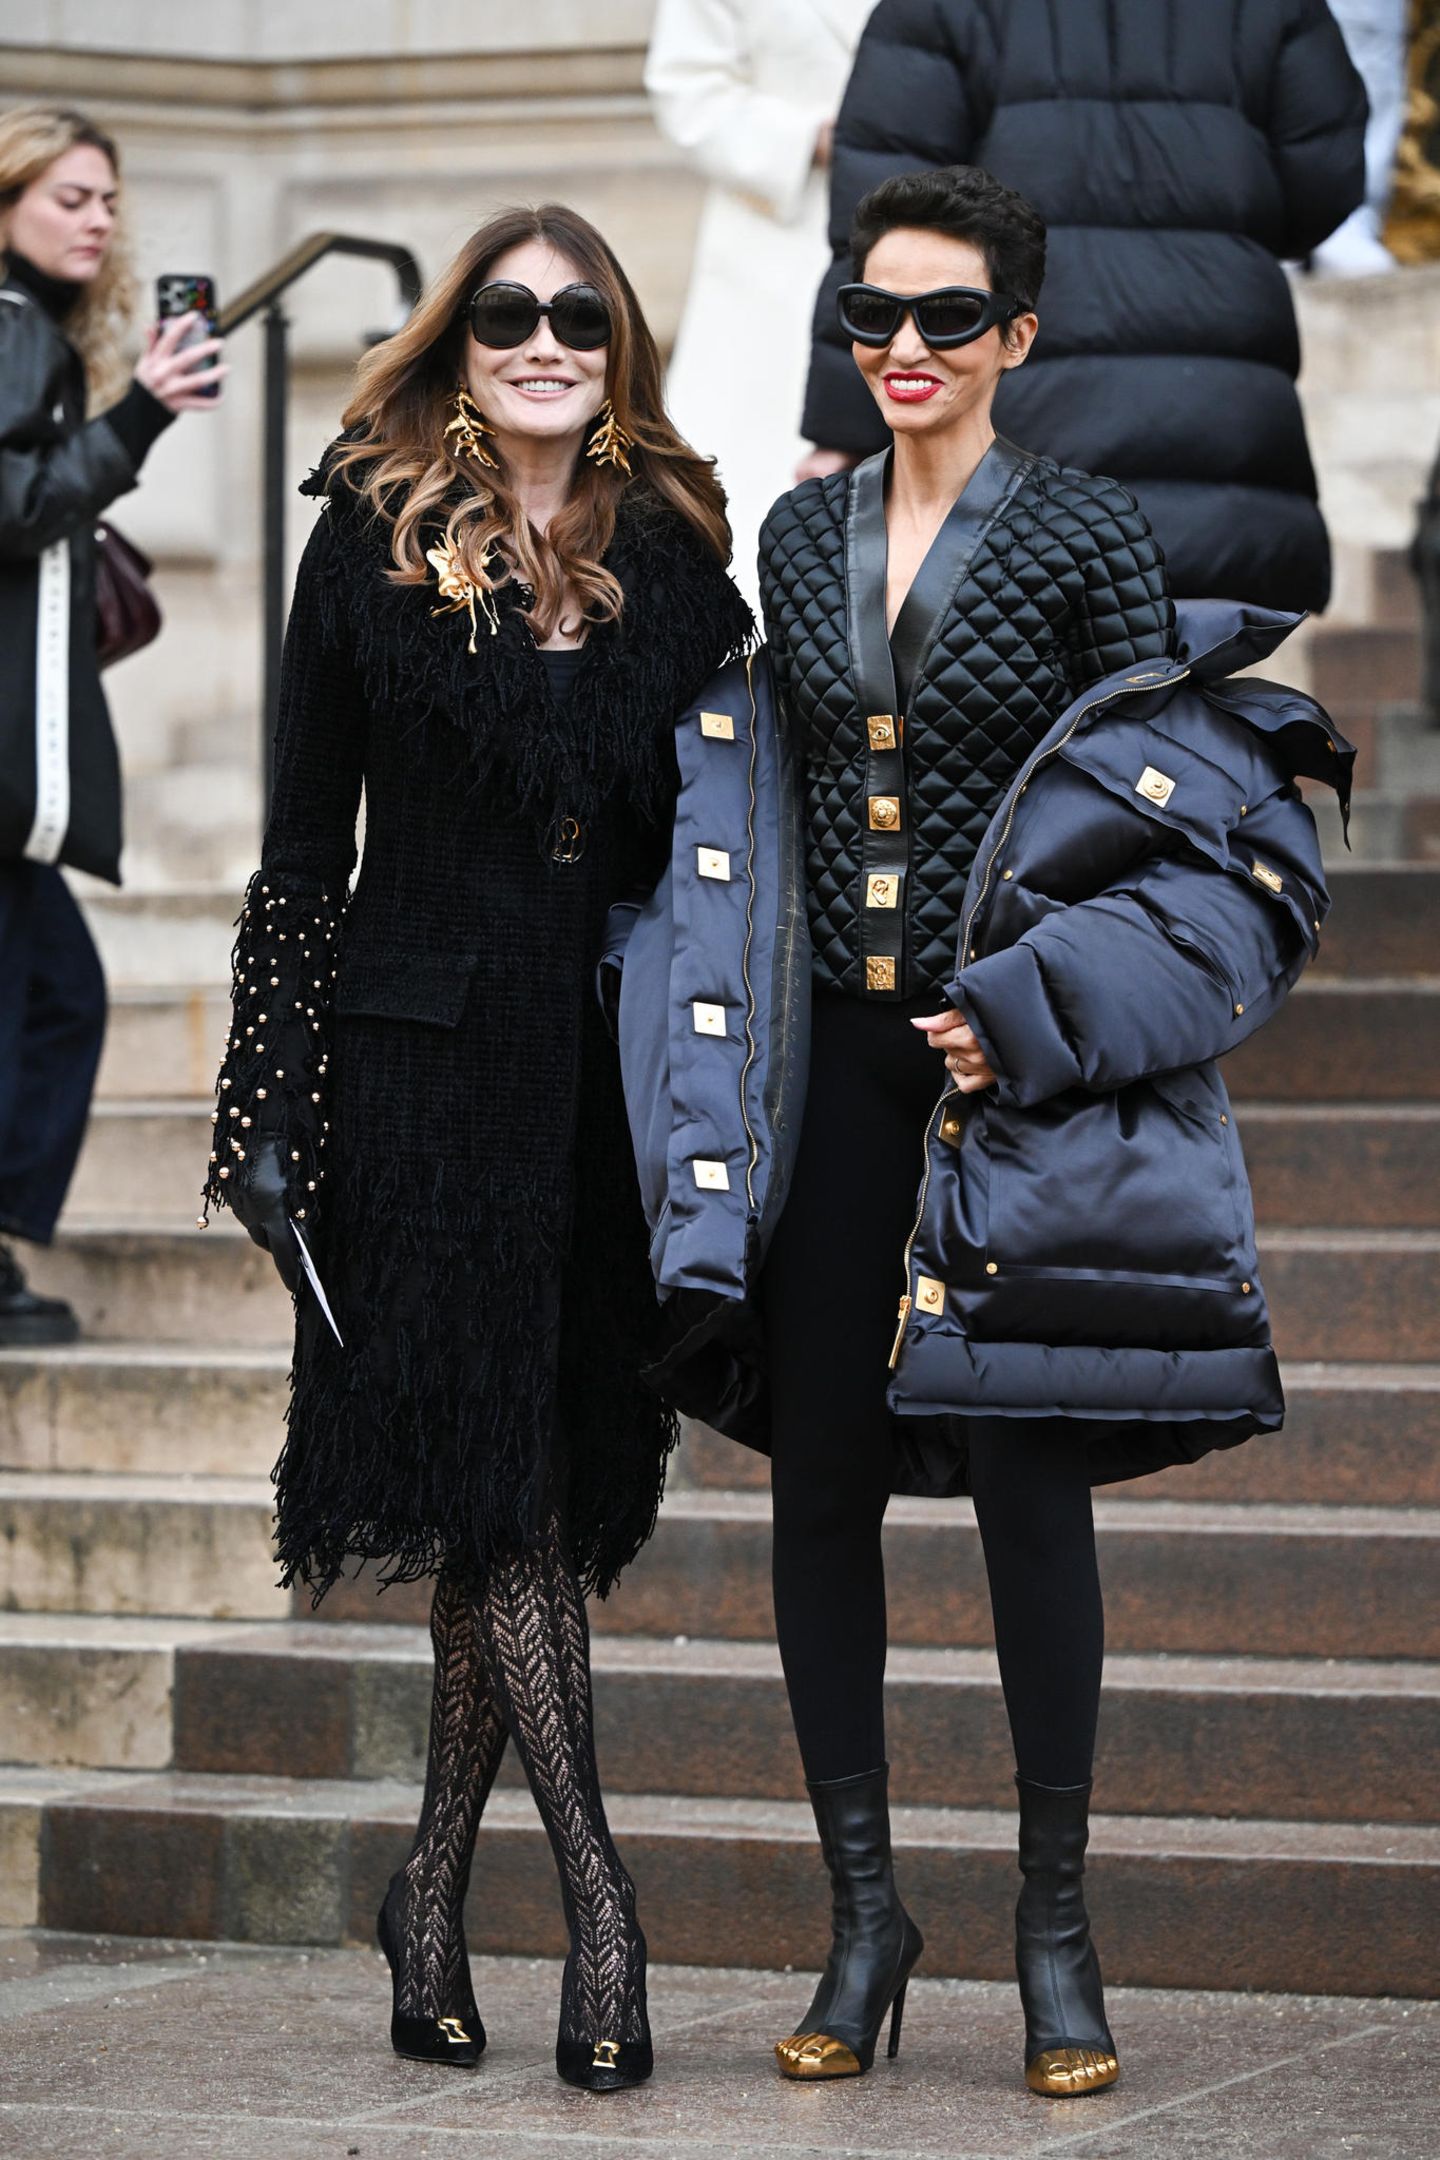 Carla Bruni und Farida Khelfa beweisen mit ihren schwarzen High-Fashion-Looks ihr Können als Fashionistas. Während Carla auf Korallen-Schmuck, Netzstrumpfhose und Fransenmantel setzt, hebt sich Farida mit dickem Outdoor-Mantel und Stepp-Blouson gekonnt von der Masse ab.